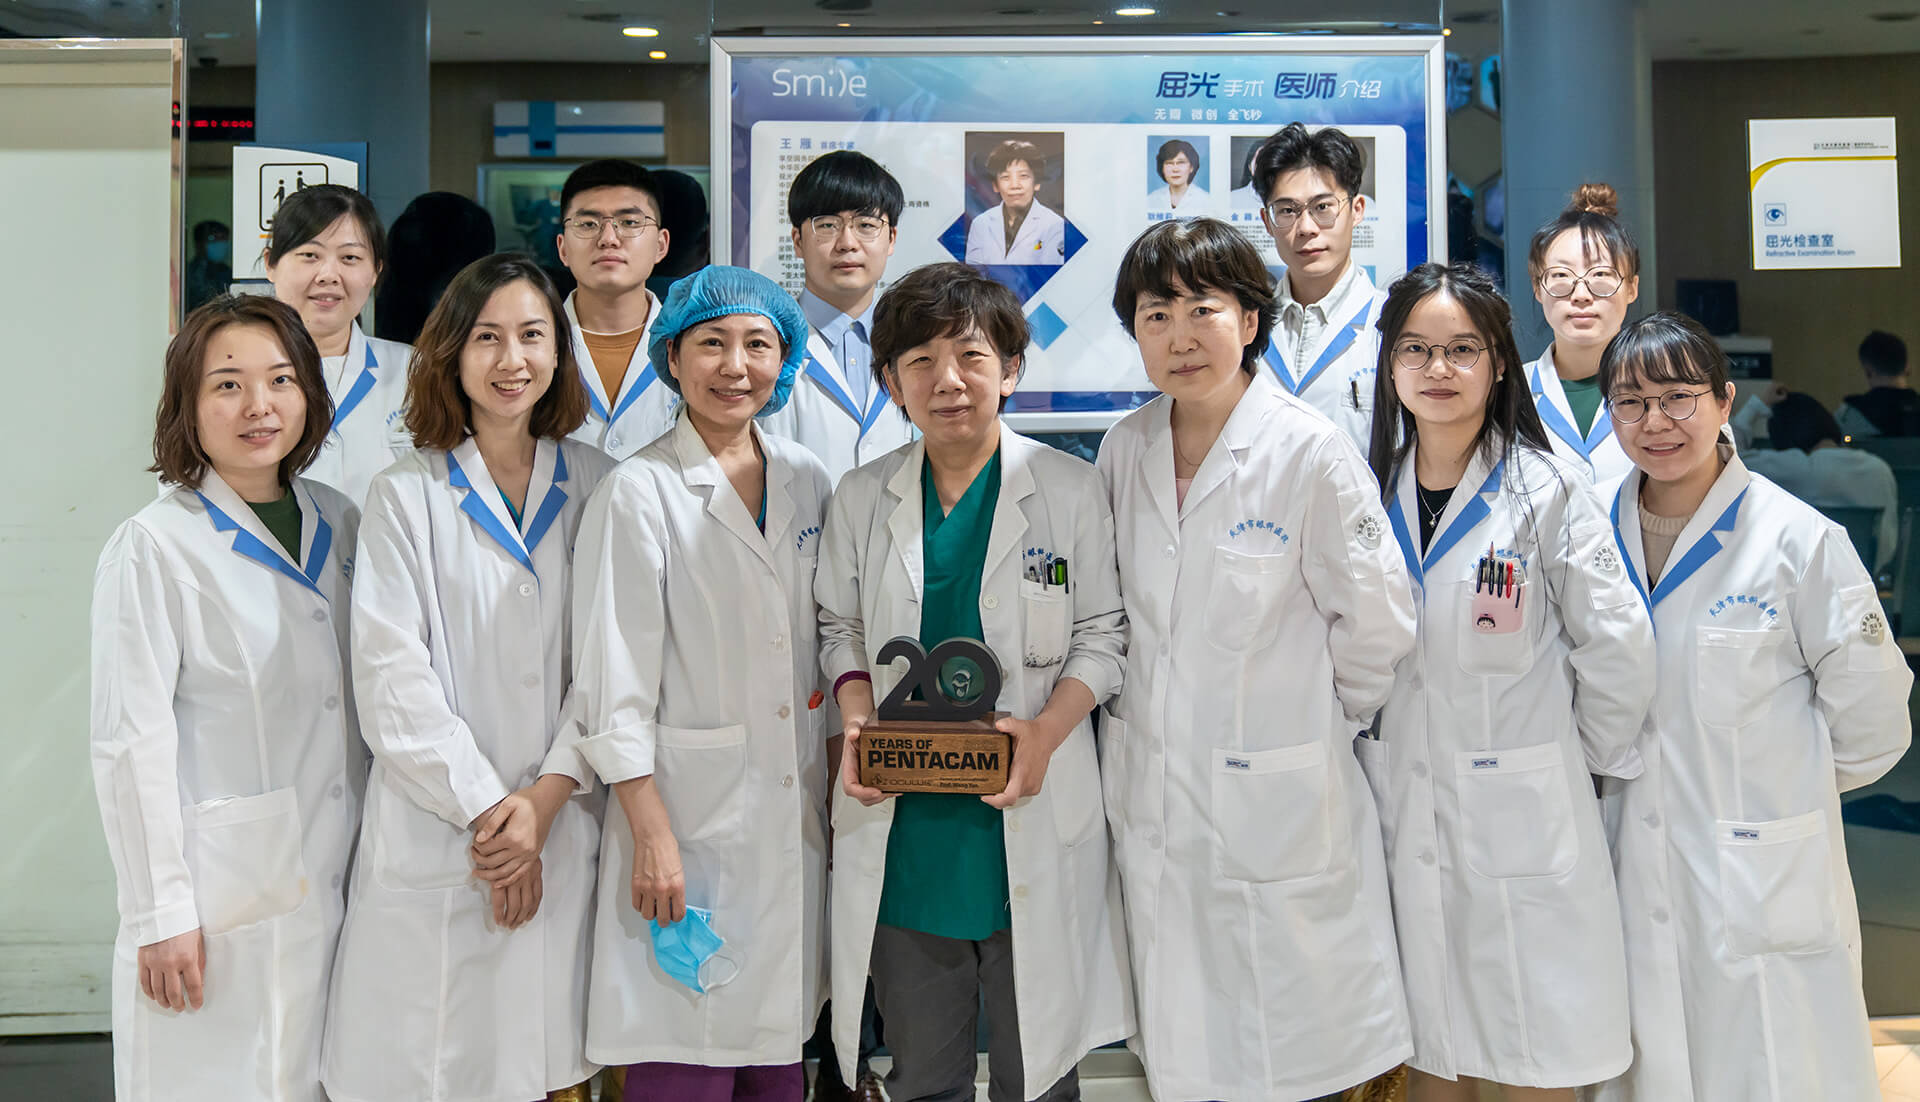 Prof. Wang Yan (mit der Trophäe) und ihre Teammitglieder